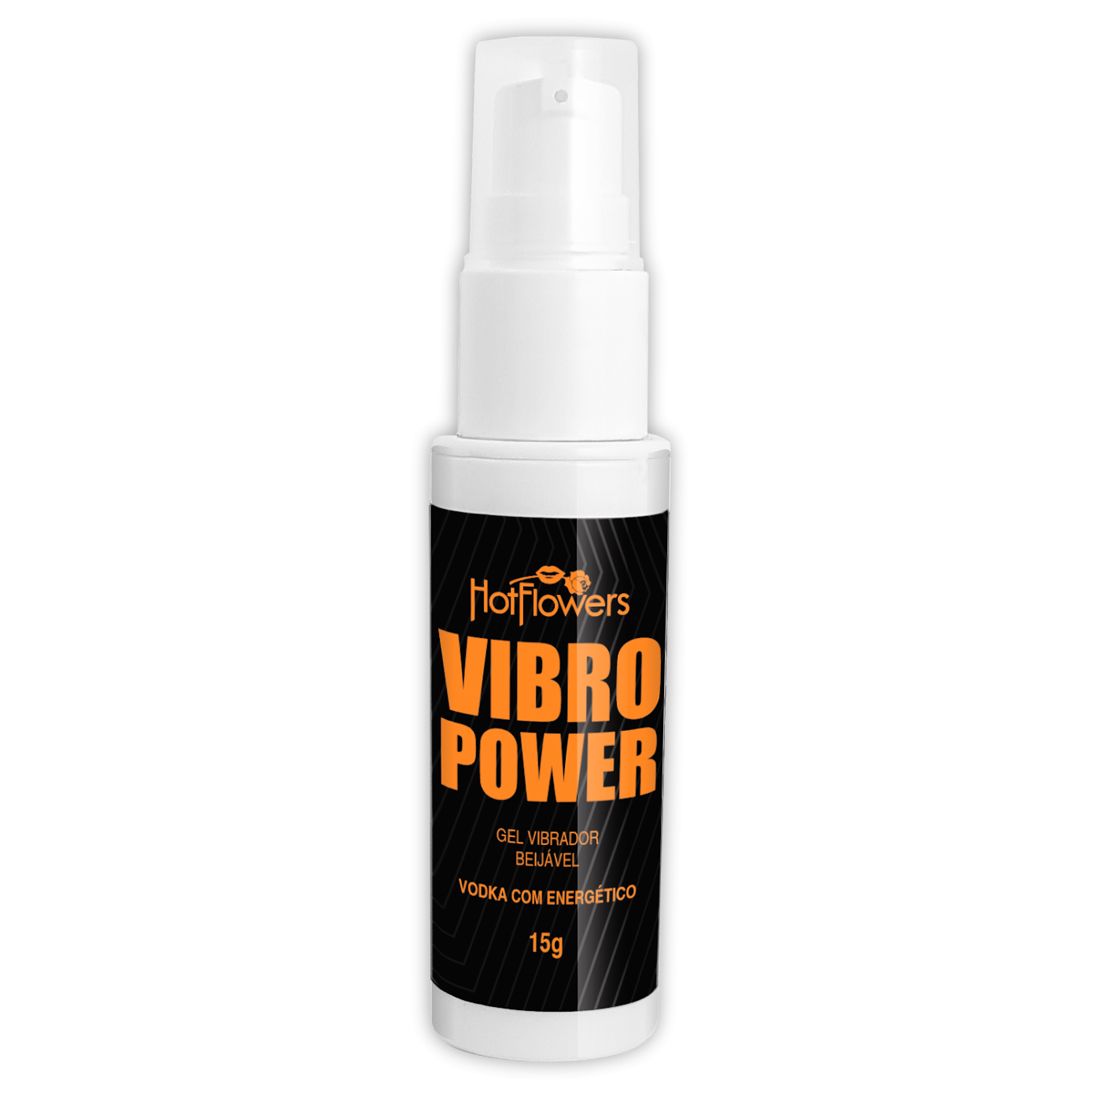 Жидкий вибратор Vibro Power со вкусом водки с энергетиком - яркий и насыщенный гель, повышающий температуру отношений. Отлично подойдет для стимуляции эрогенных зон и клитора.